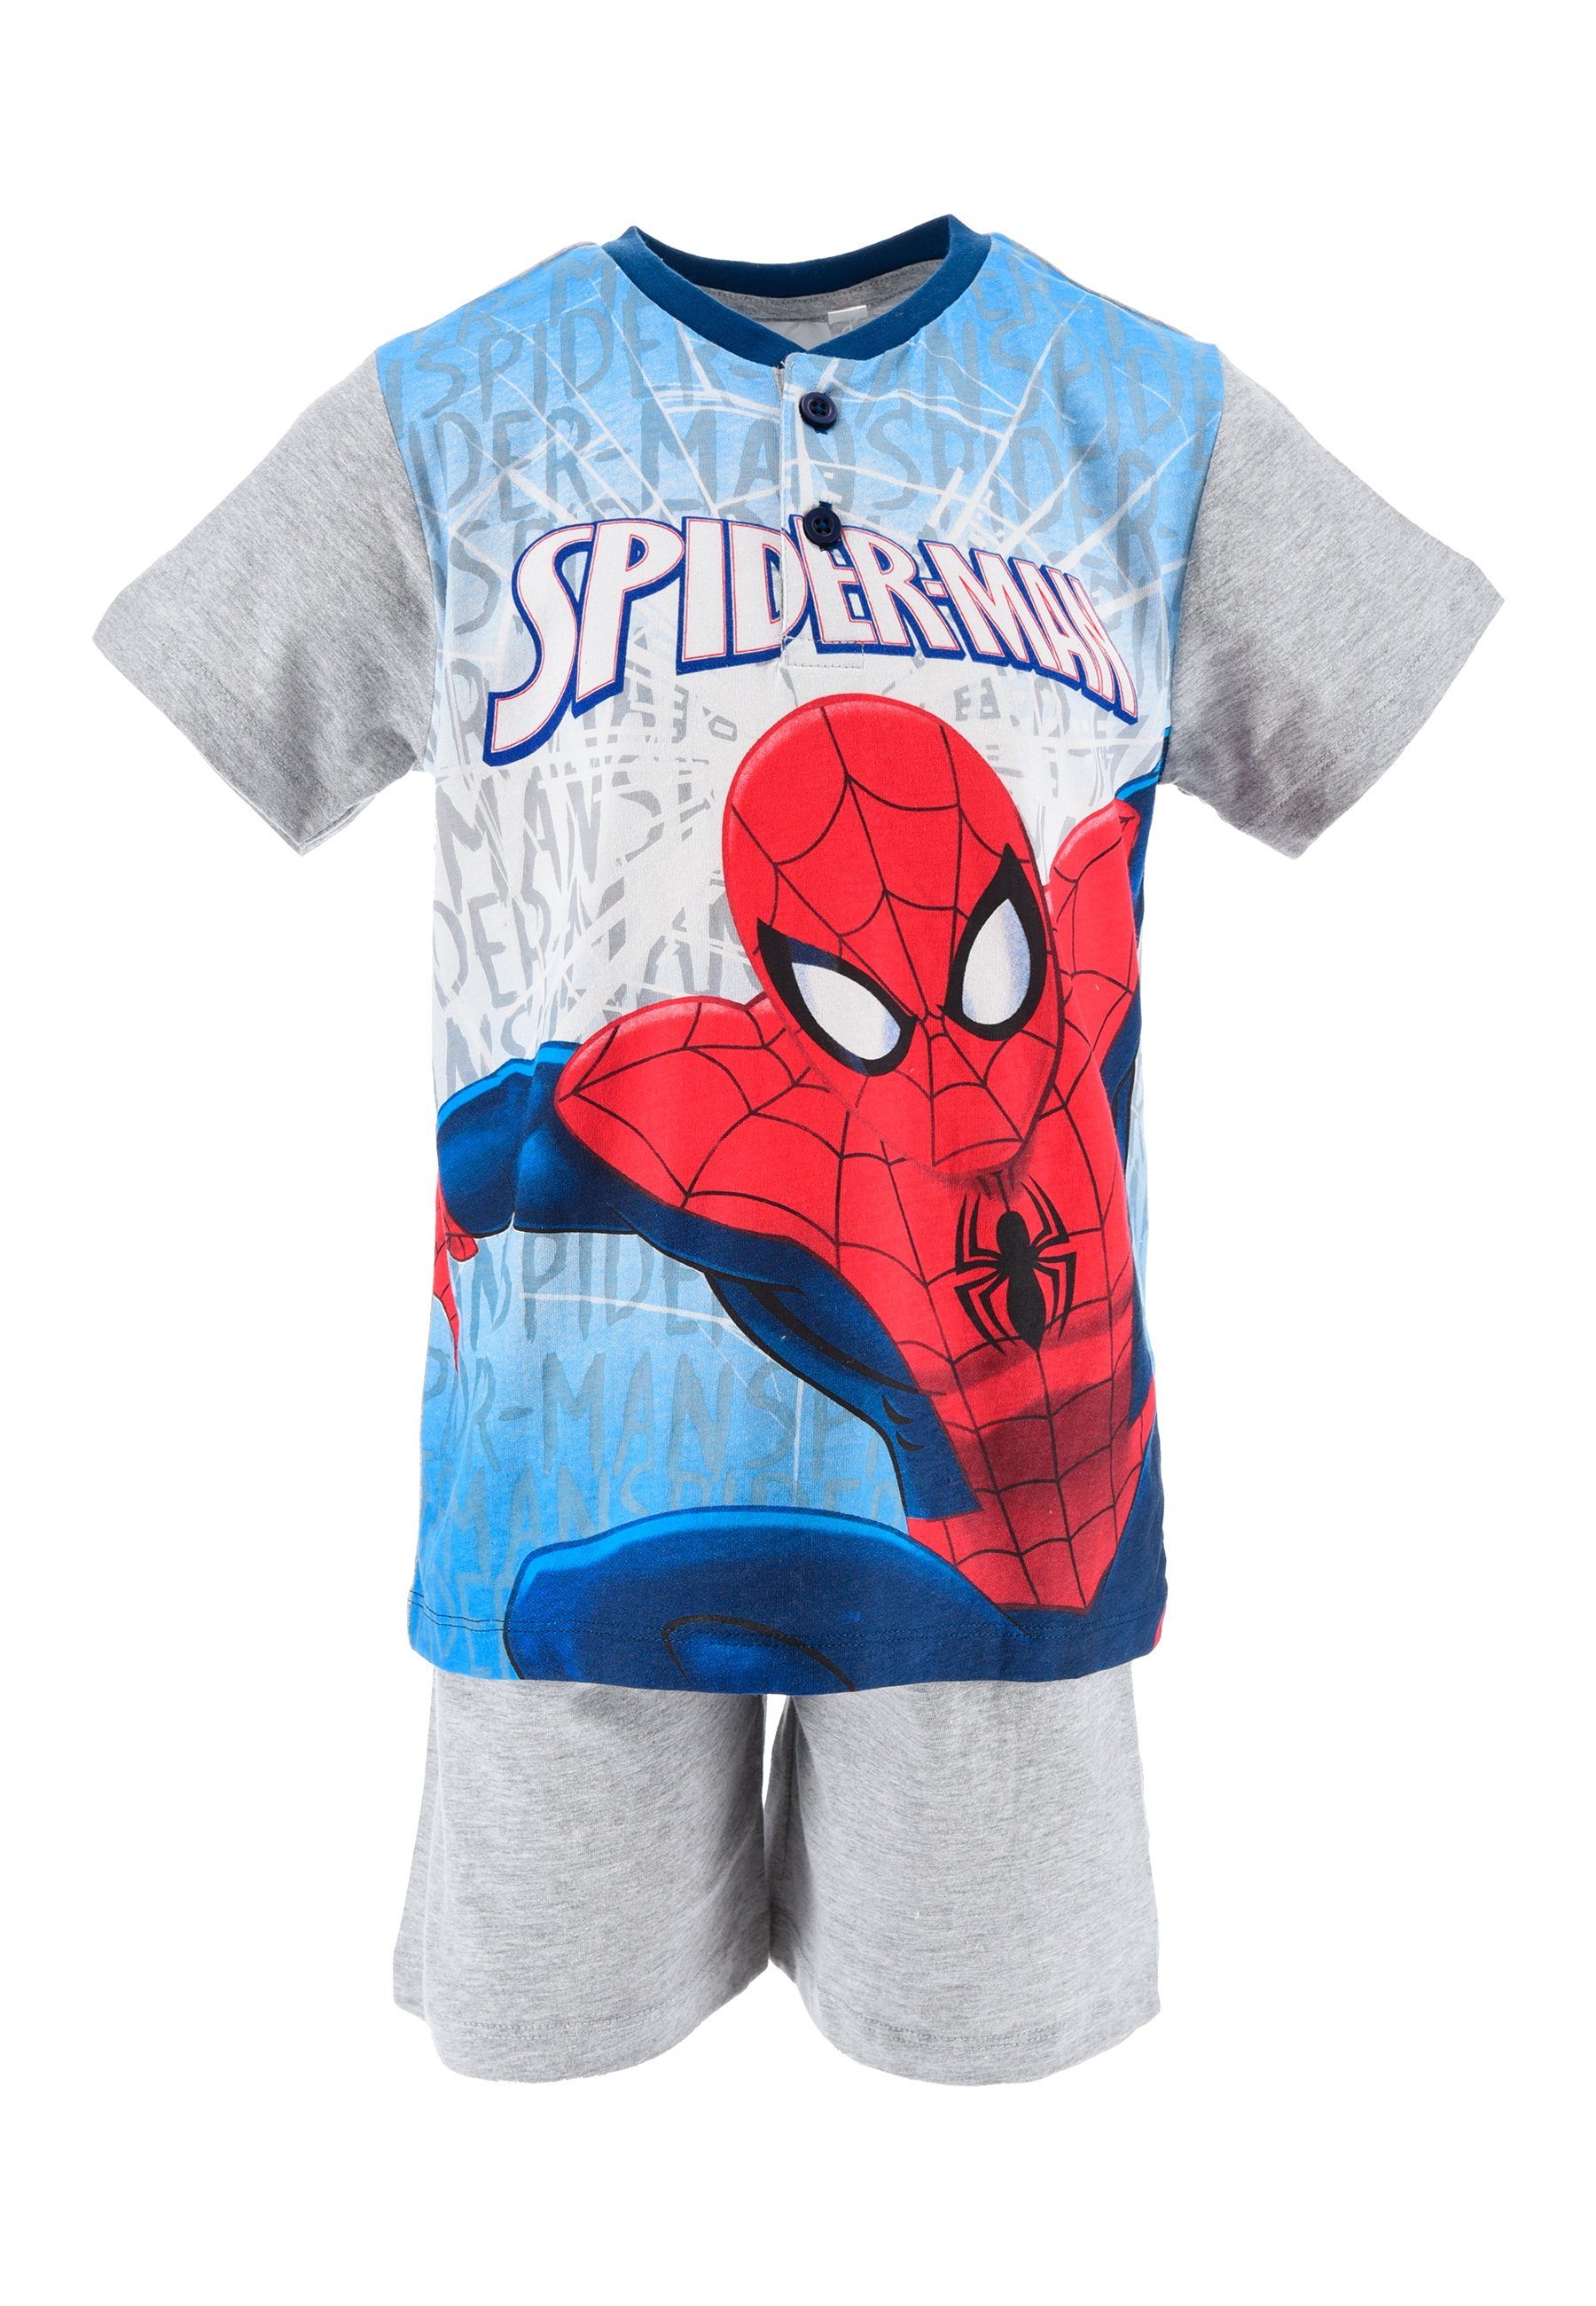 Spiderman Shorty Kinder Jungen Pyjama Schlaf-Set (2 tlg) Grau